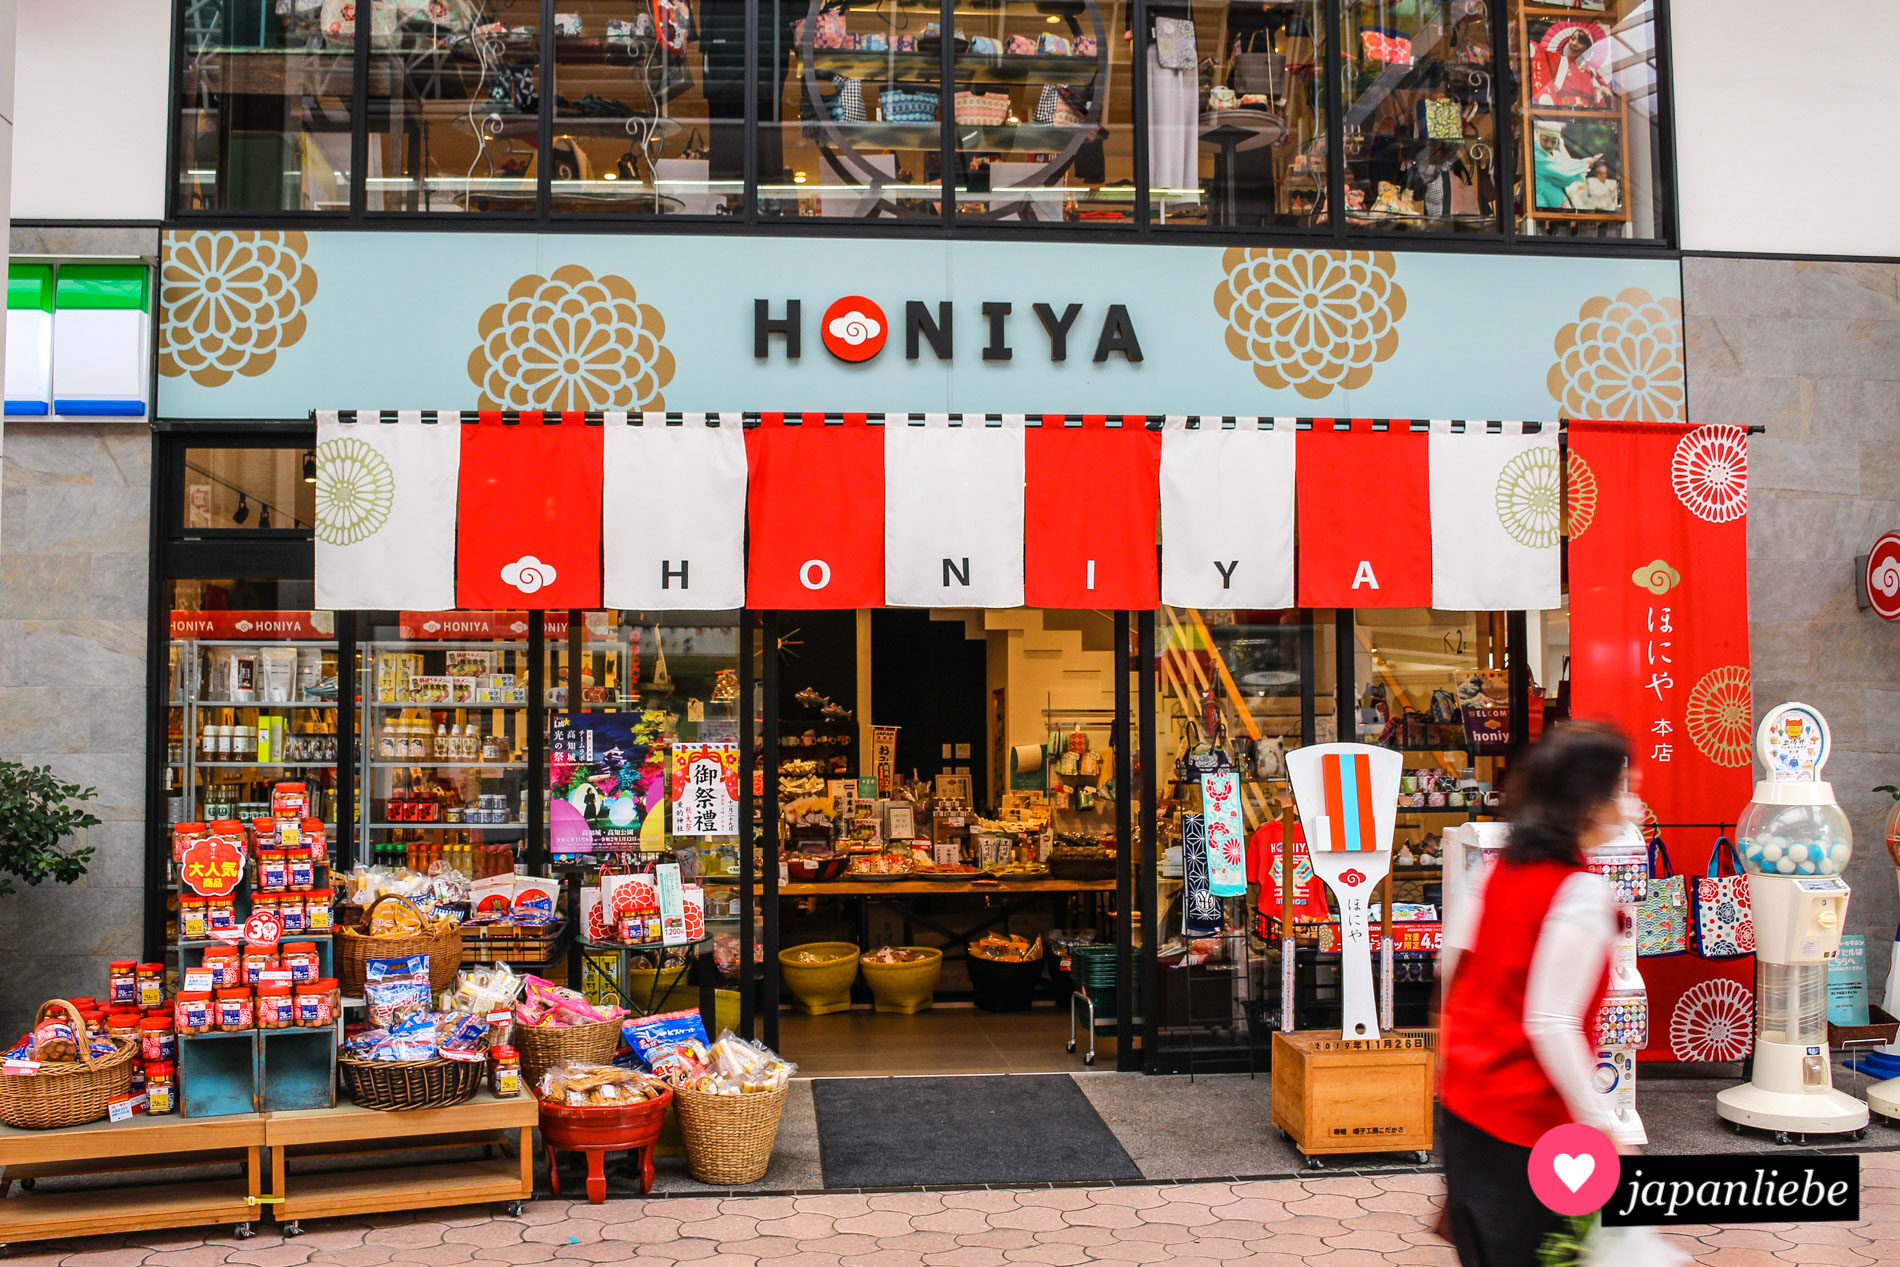 Die berühmte Yosakoi-Tanzgruppe „Honiya“ betreibt das ganze Jahr über einen Laden in der Einkaufspassage von Kōchi.